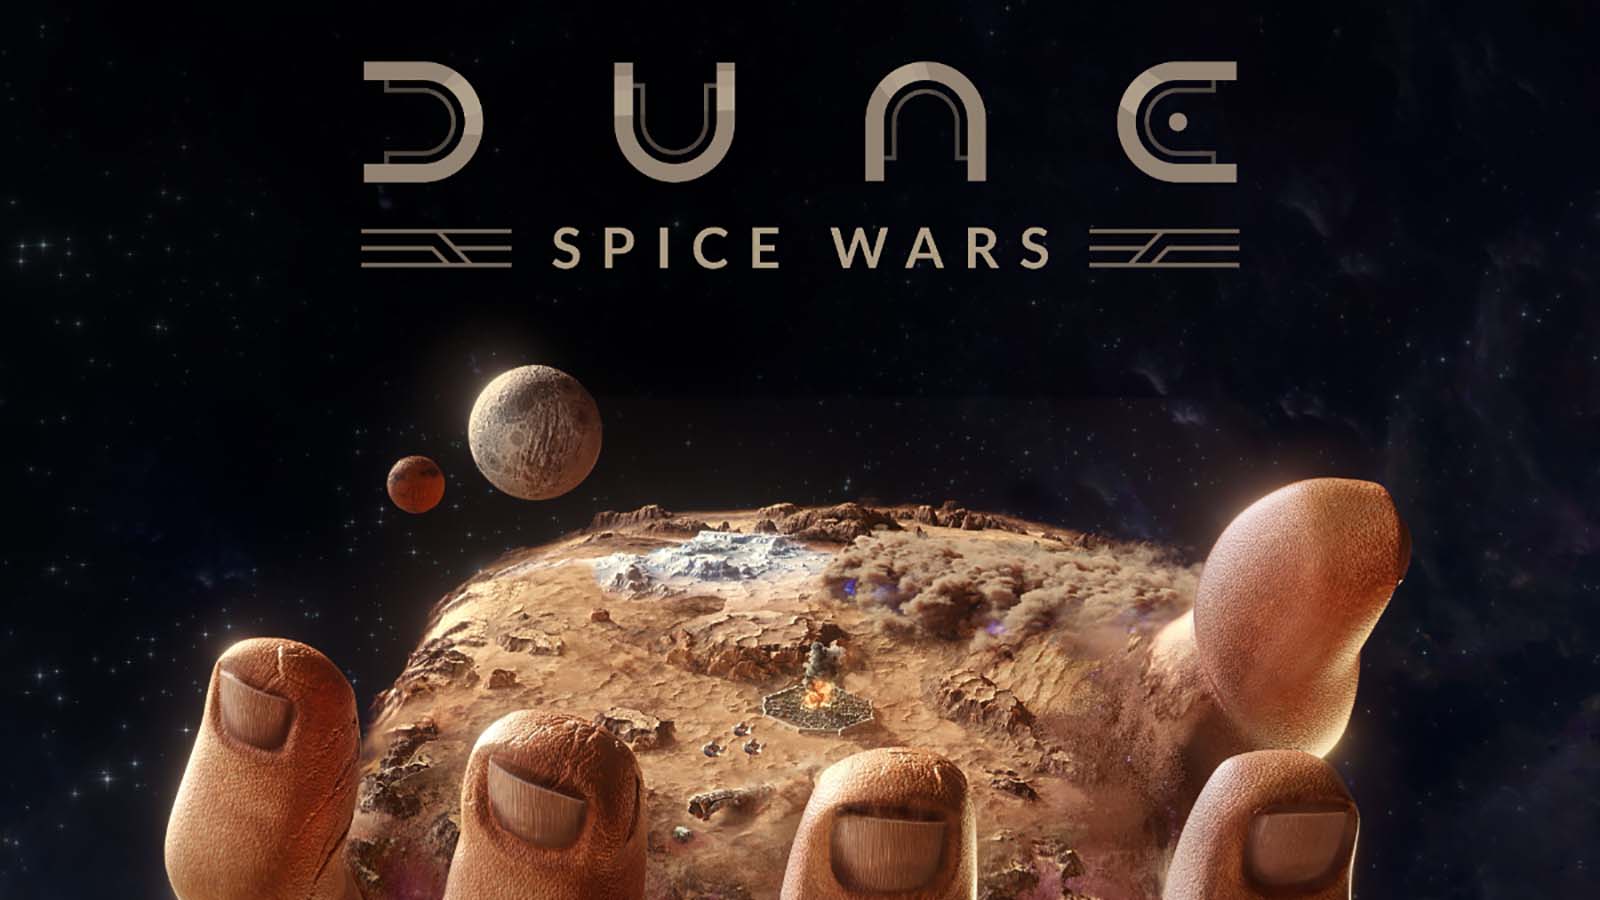 Dune-Spice Wars